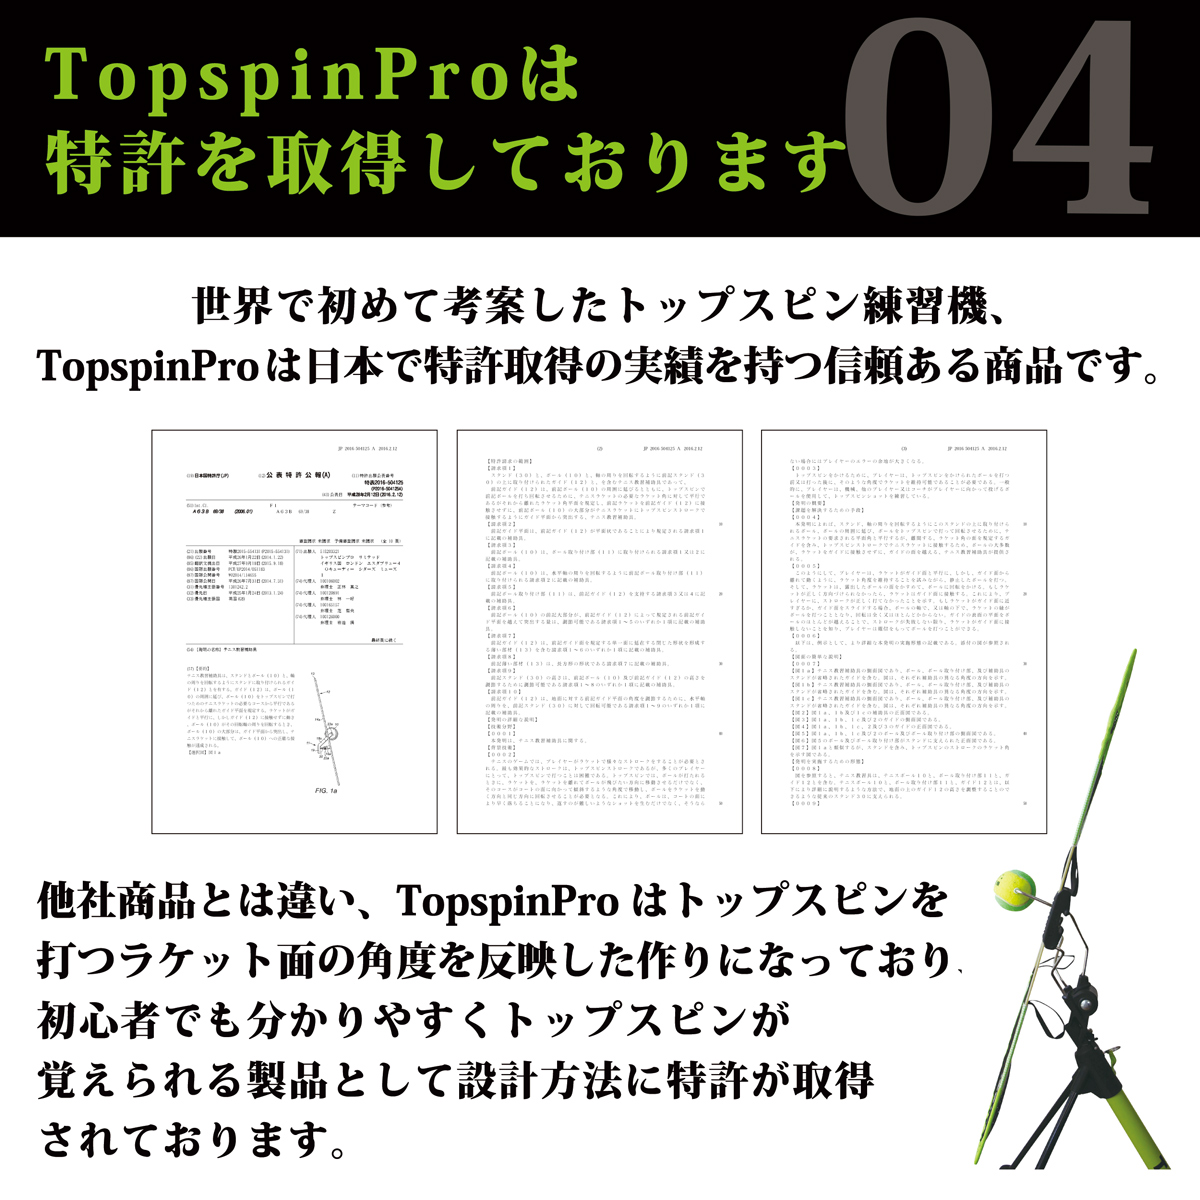 テニス 練習器具 練習機 硬式テニス TopspinPro トップスピンプロ